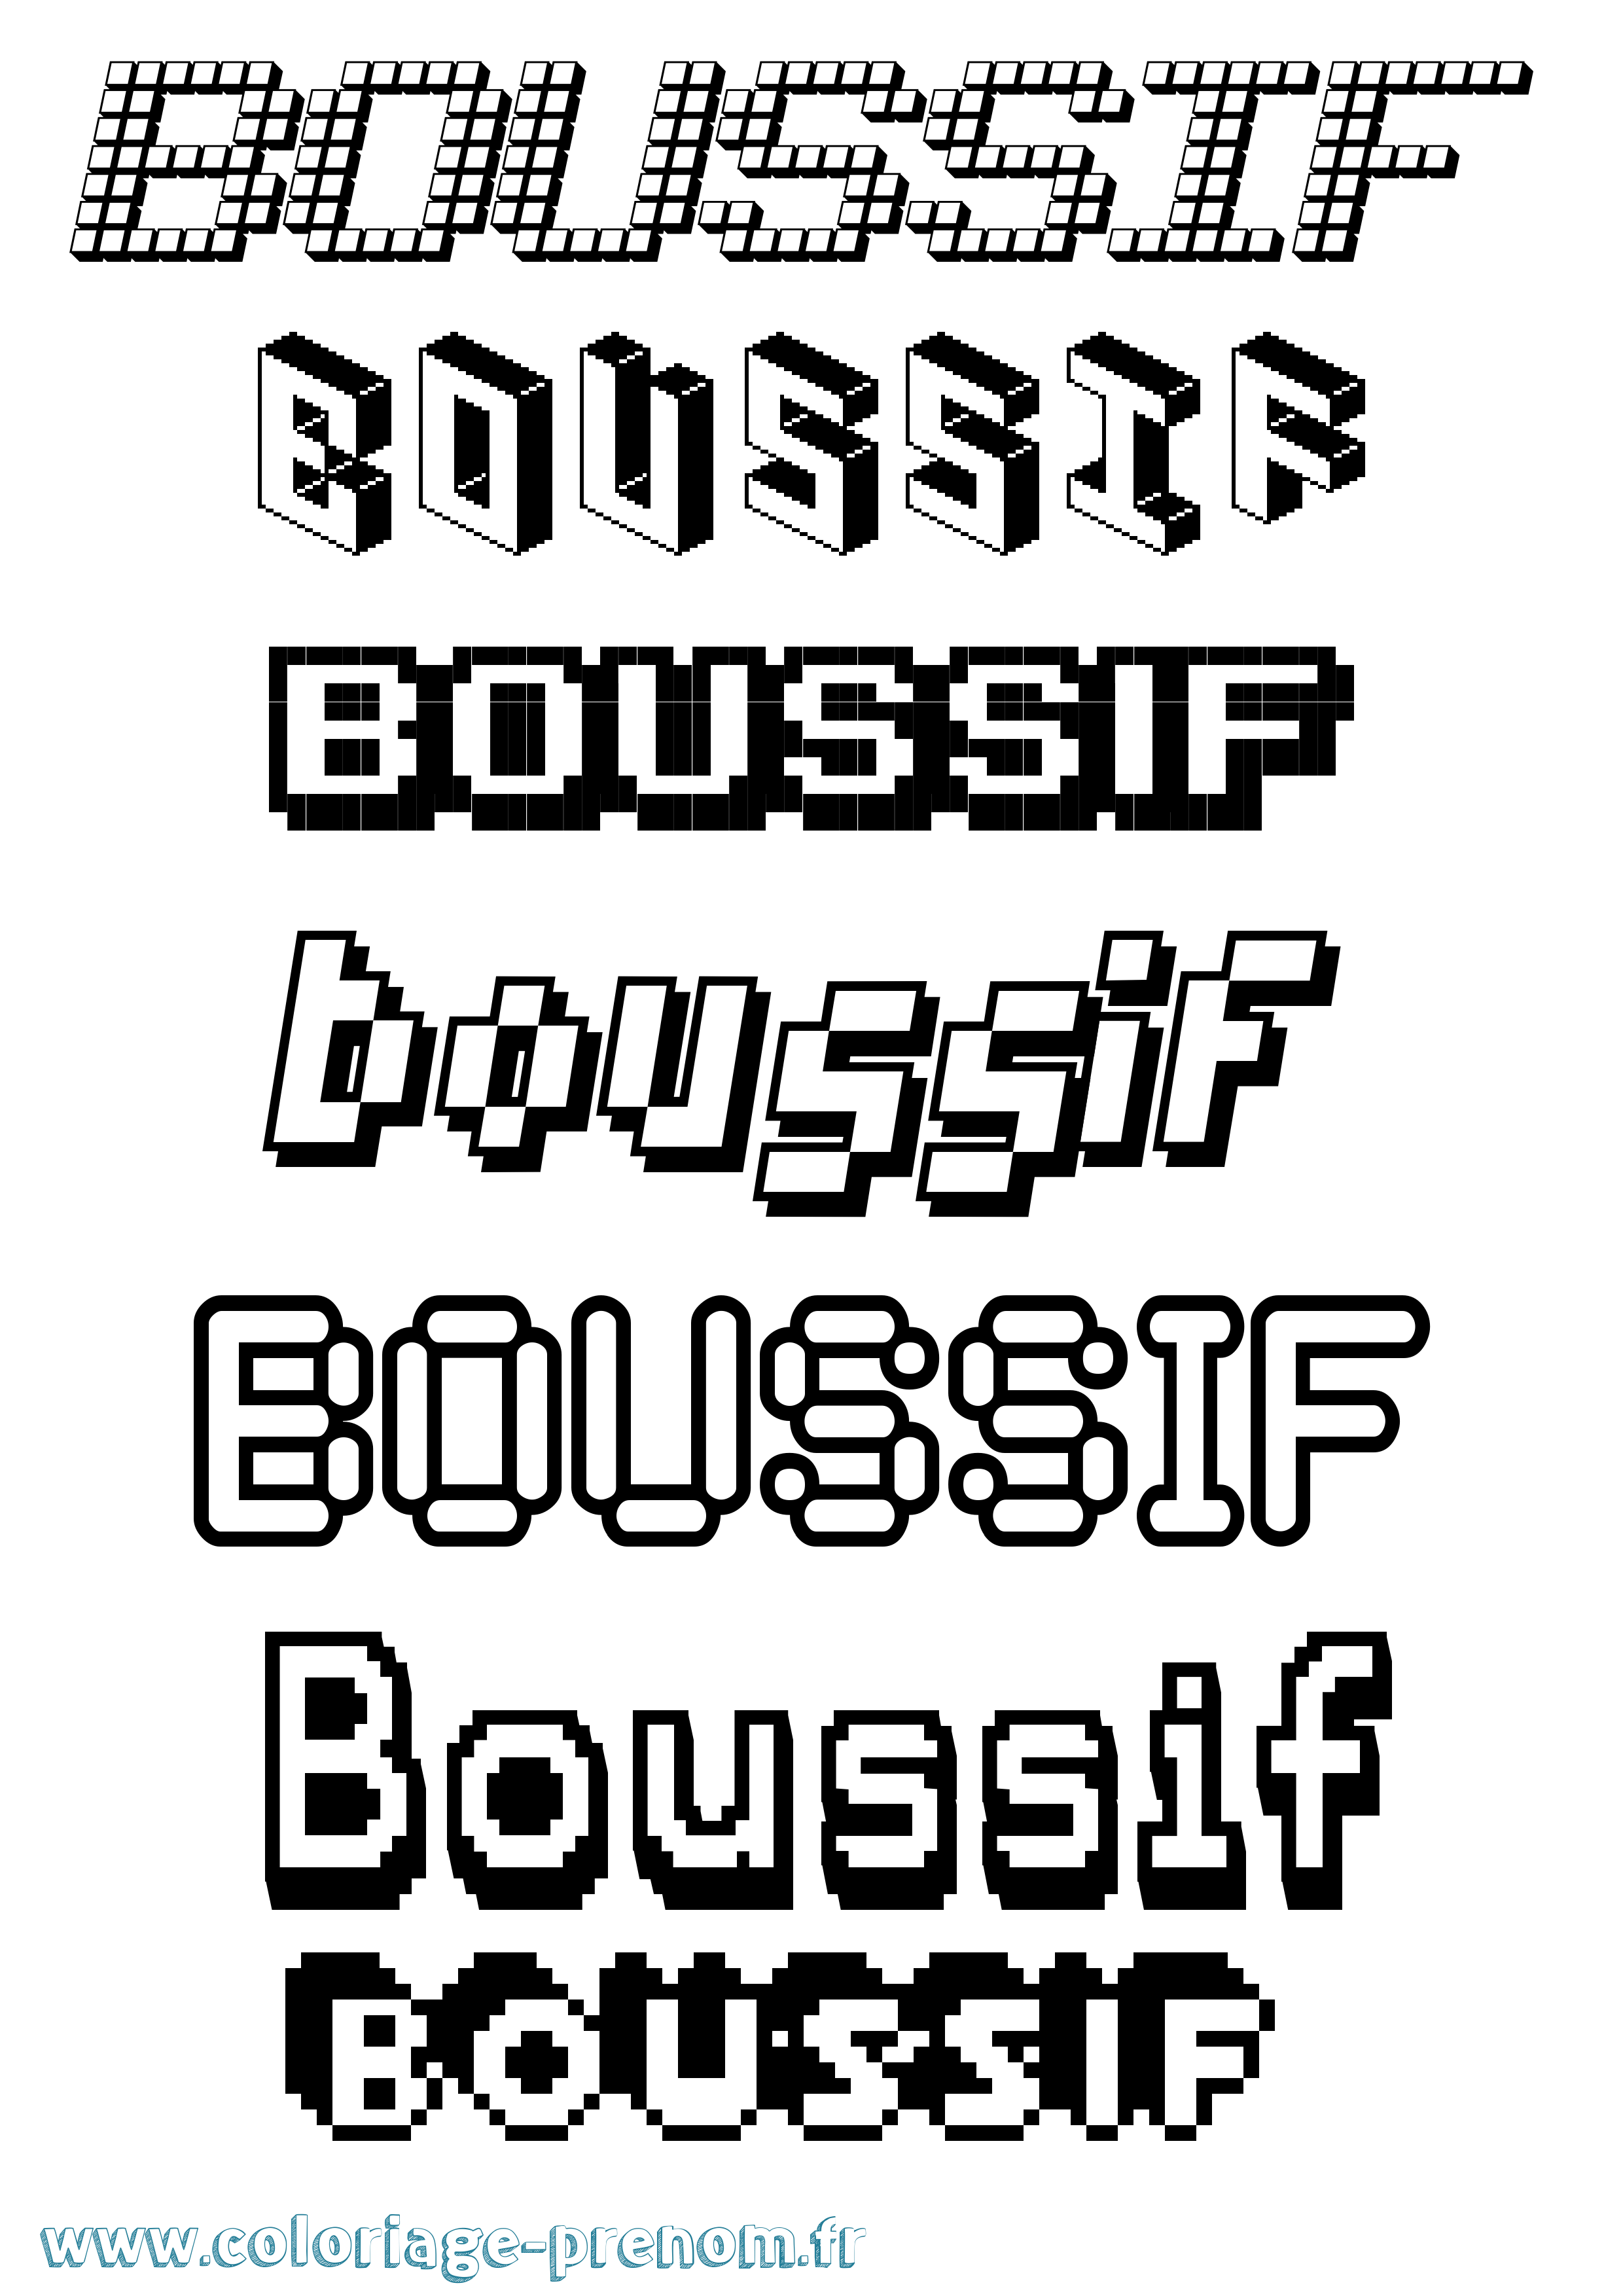 Coloriage prénom Boussif Pixel